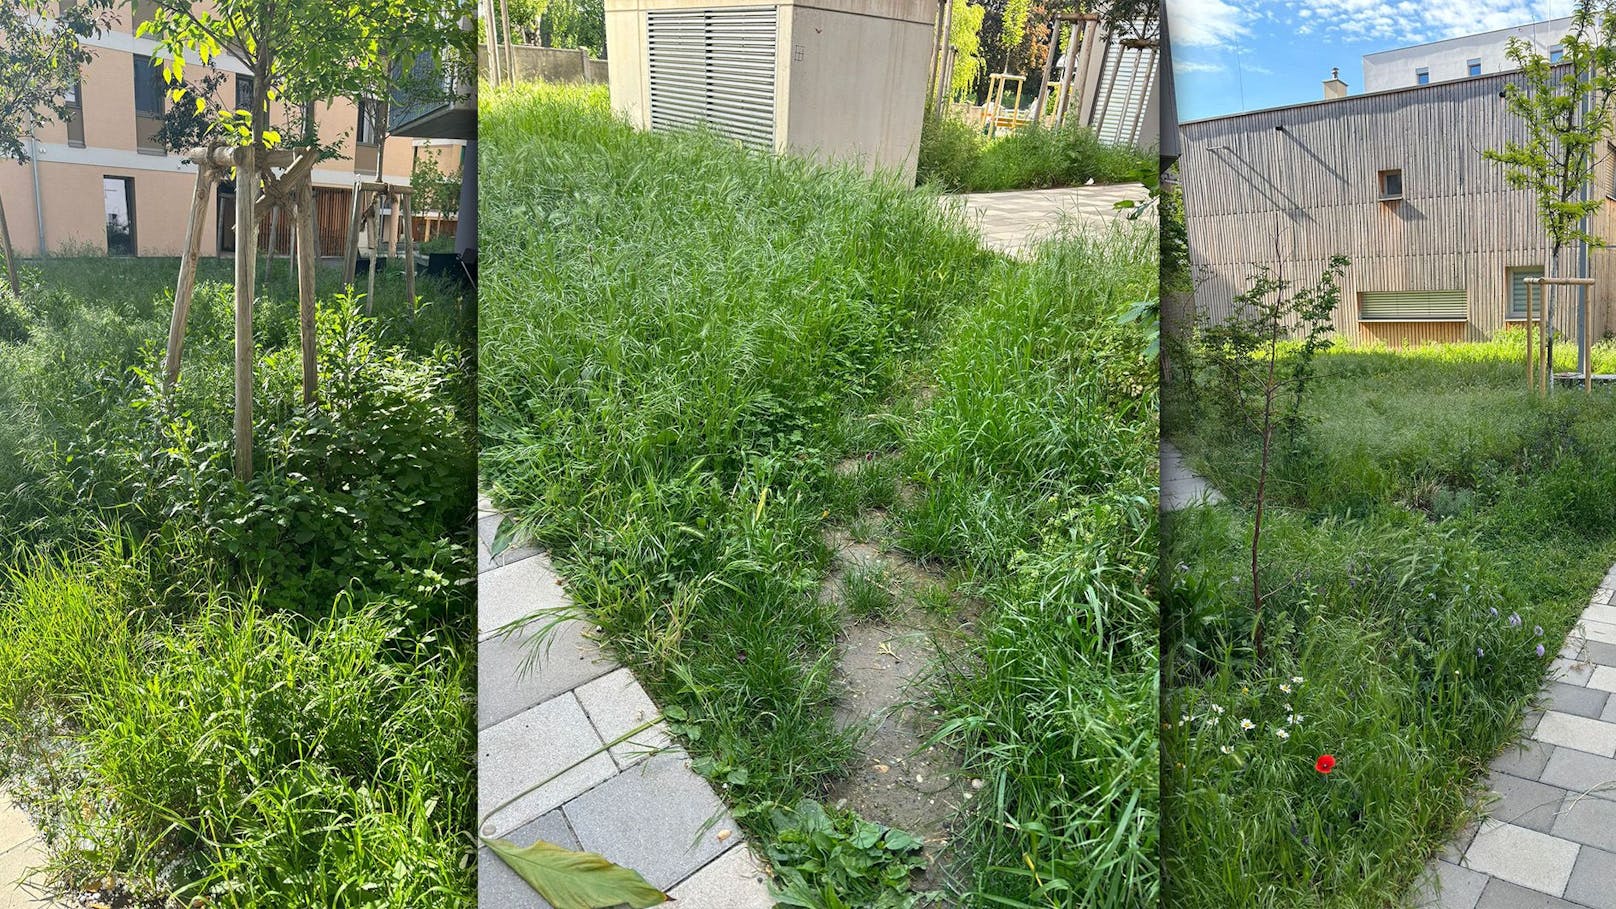 "Gras bis zum Bauch" – Hausverwaltung mäht Rasen nicht